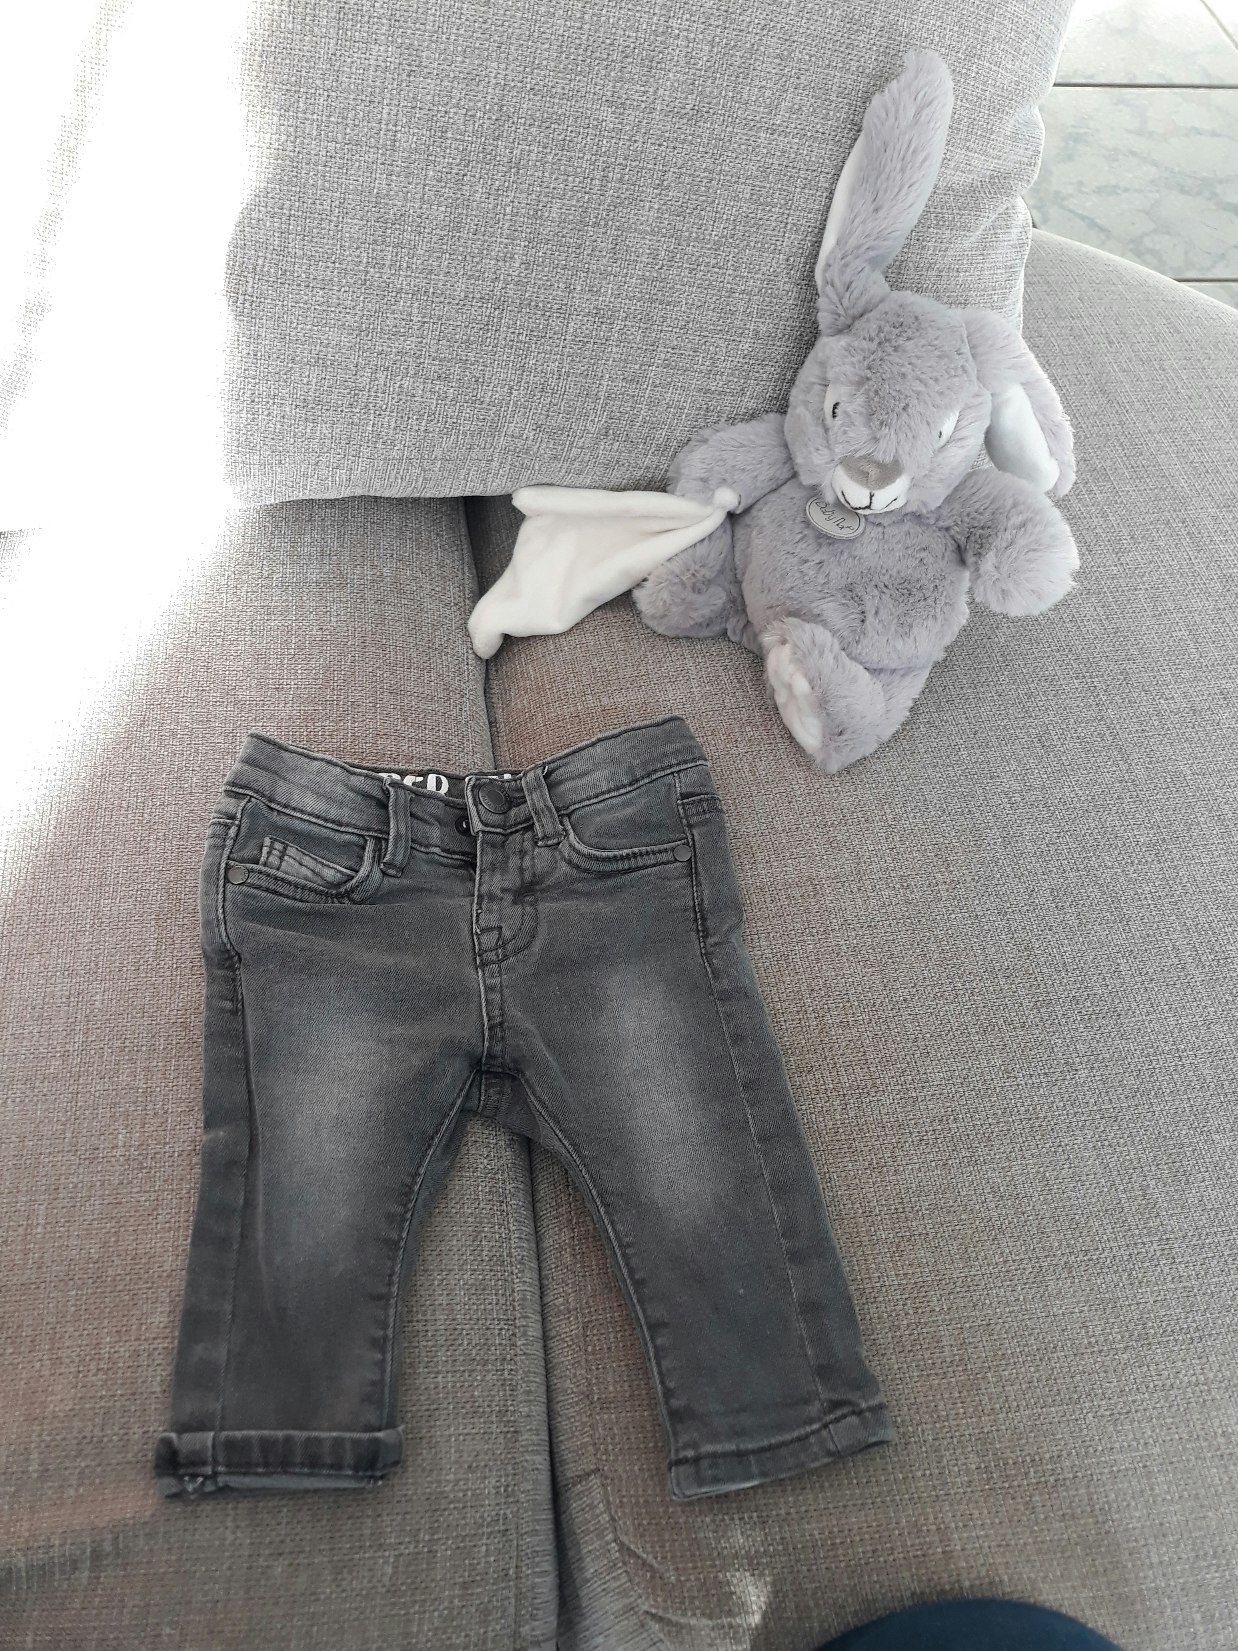 Jeans gris 
Taille 3 mois 
Très bon état